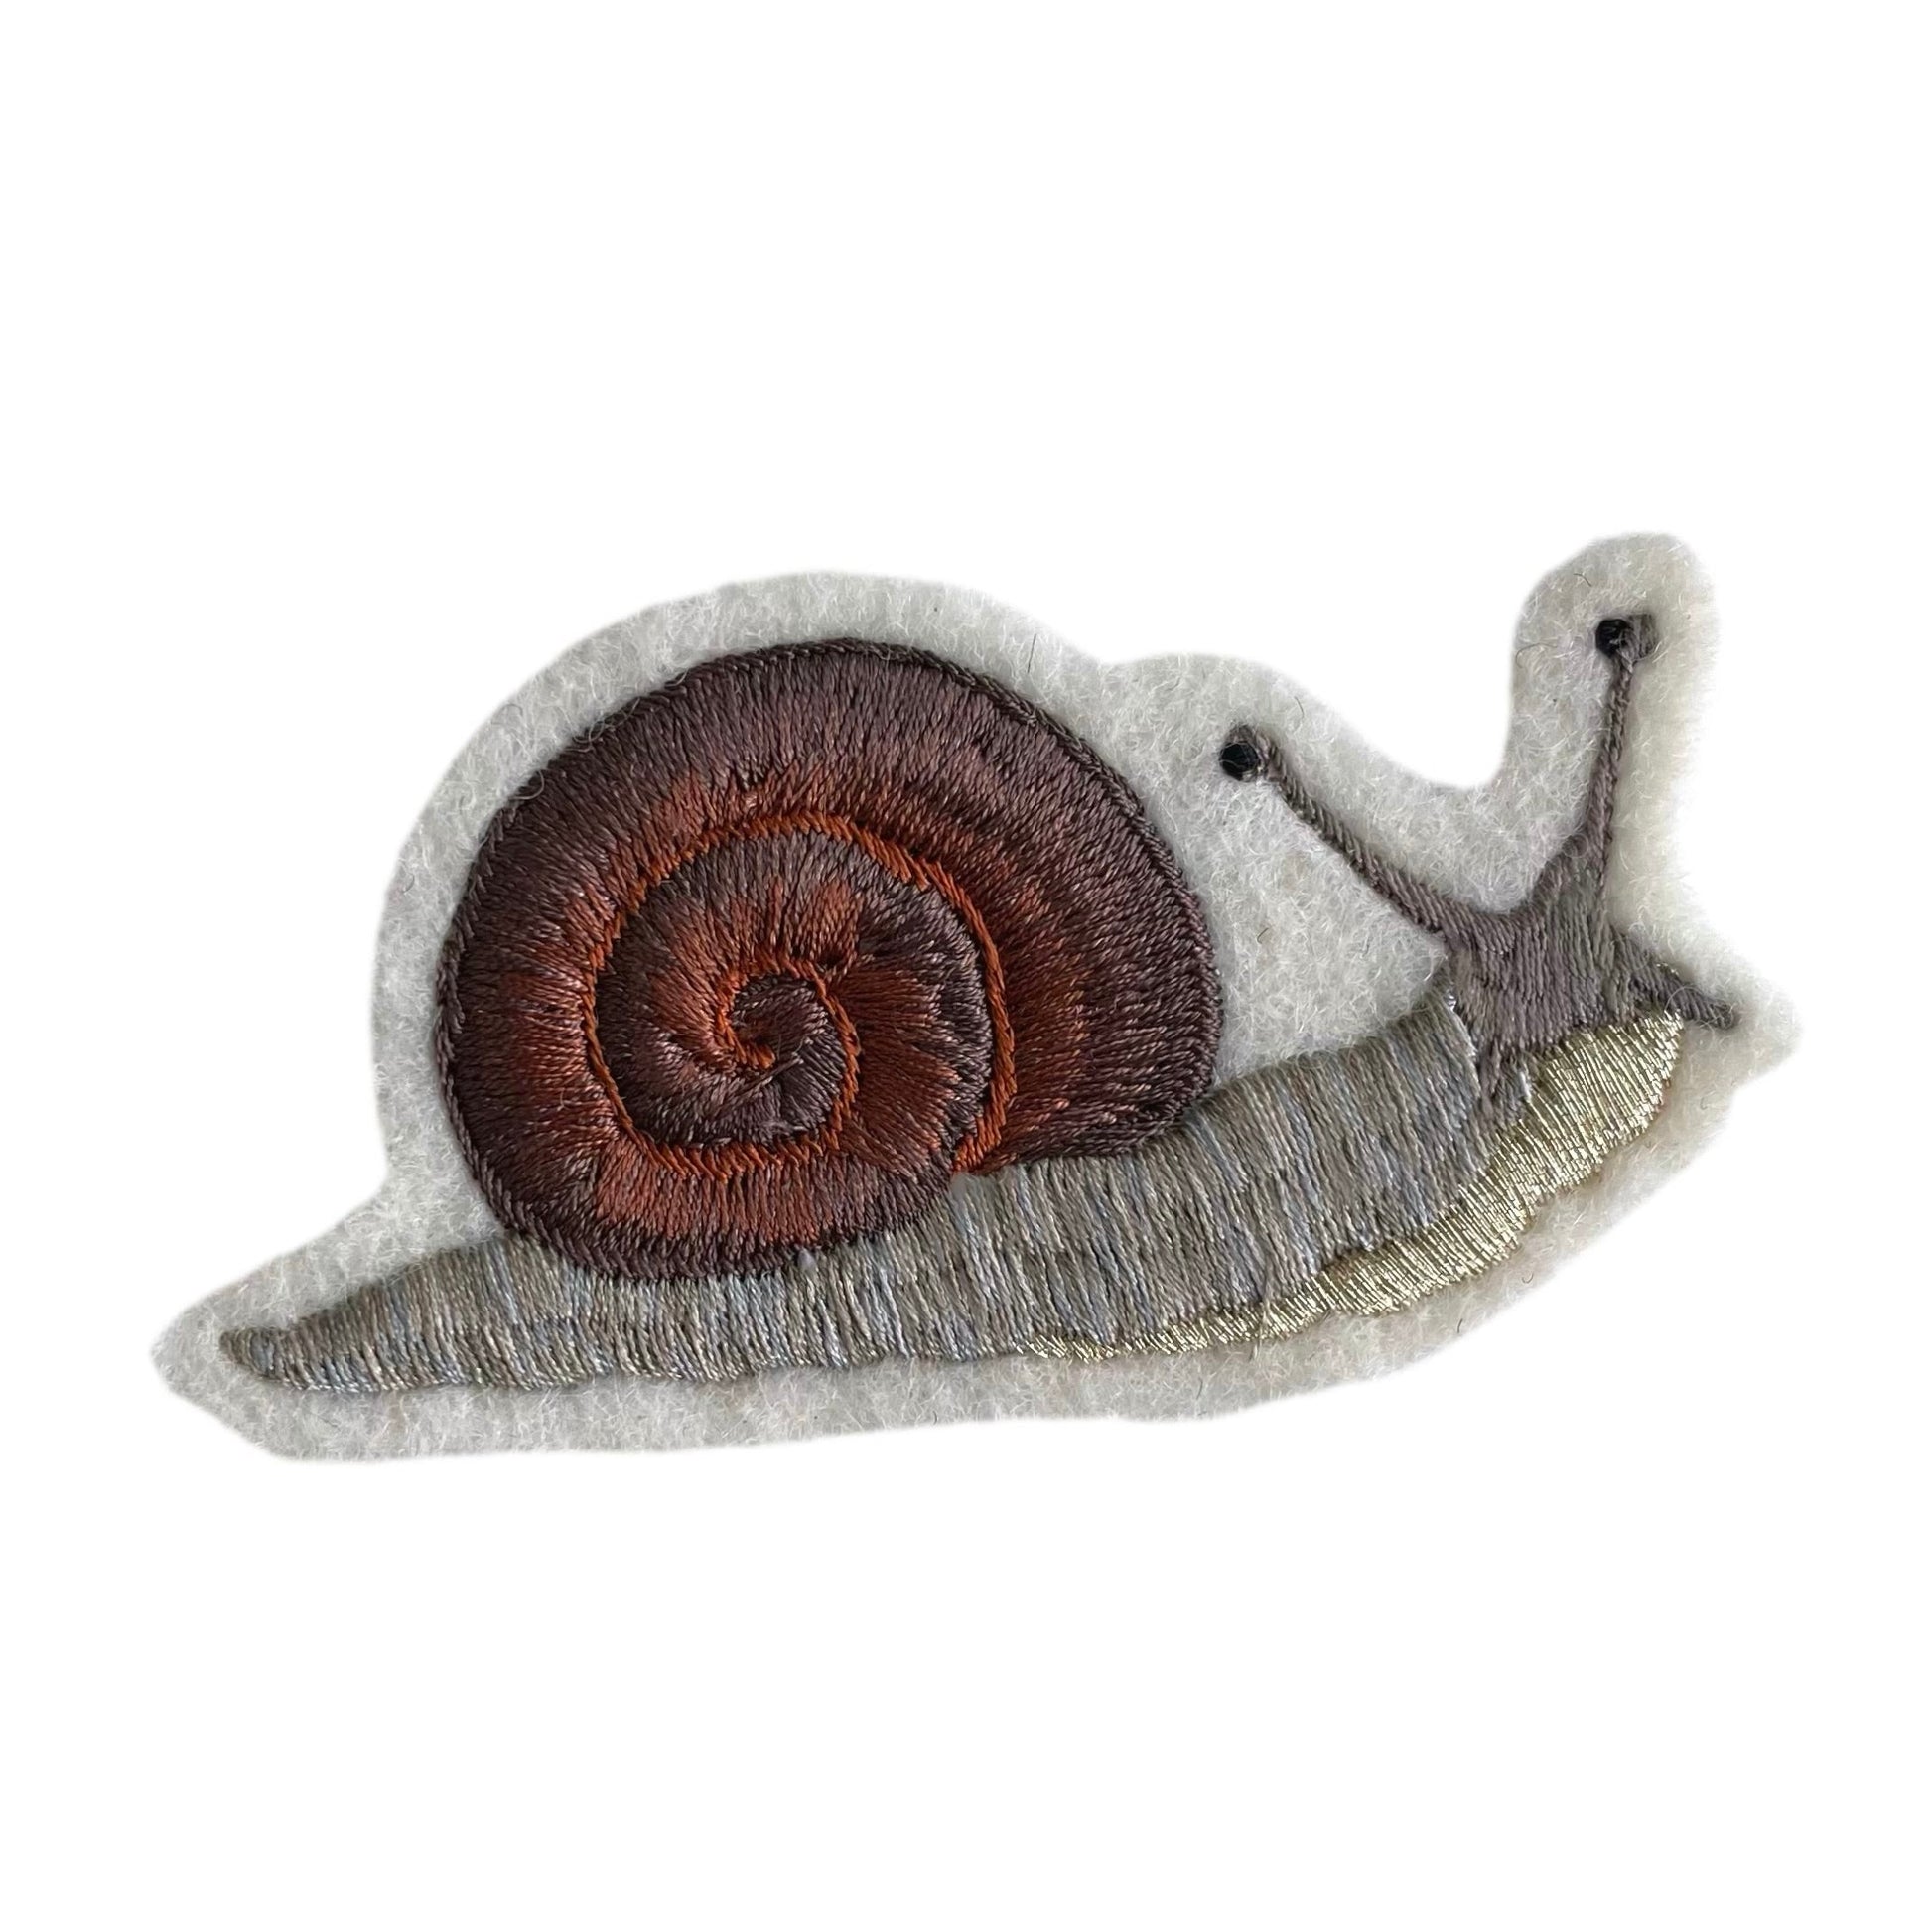 Left snail on white background 